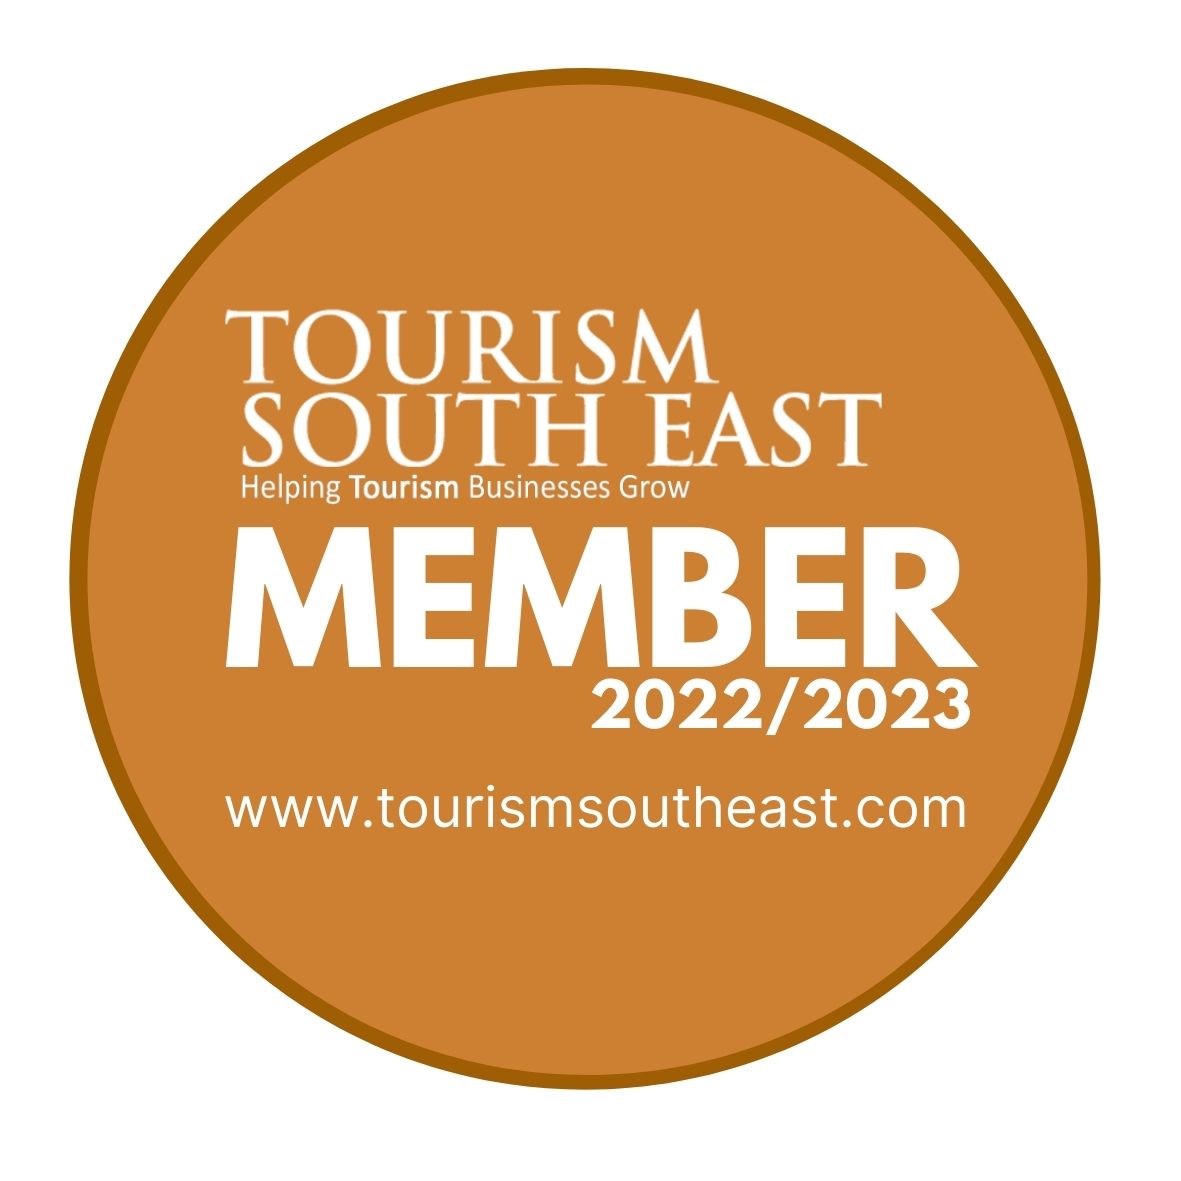 Tourism South East Member - Bronze